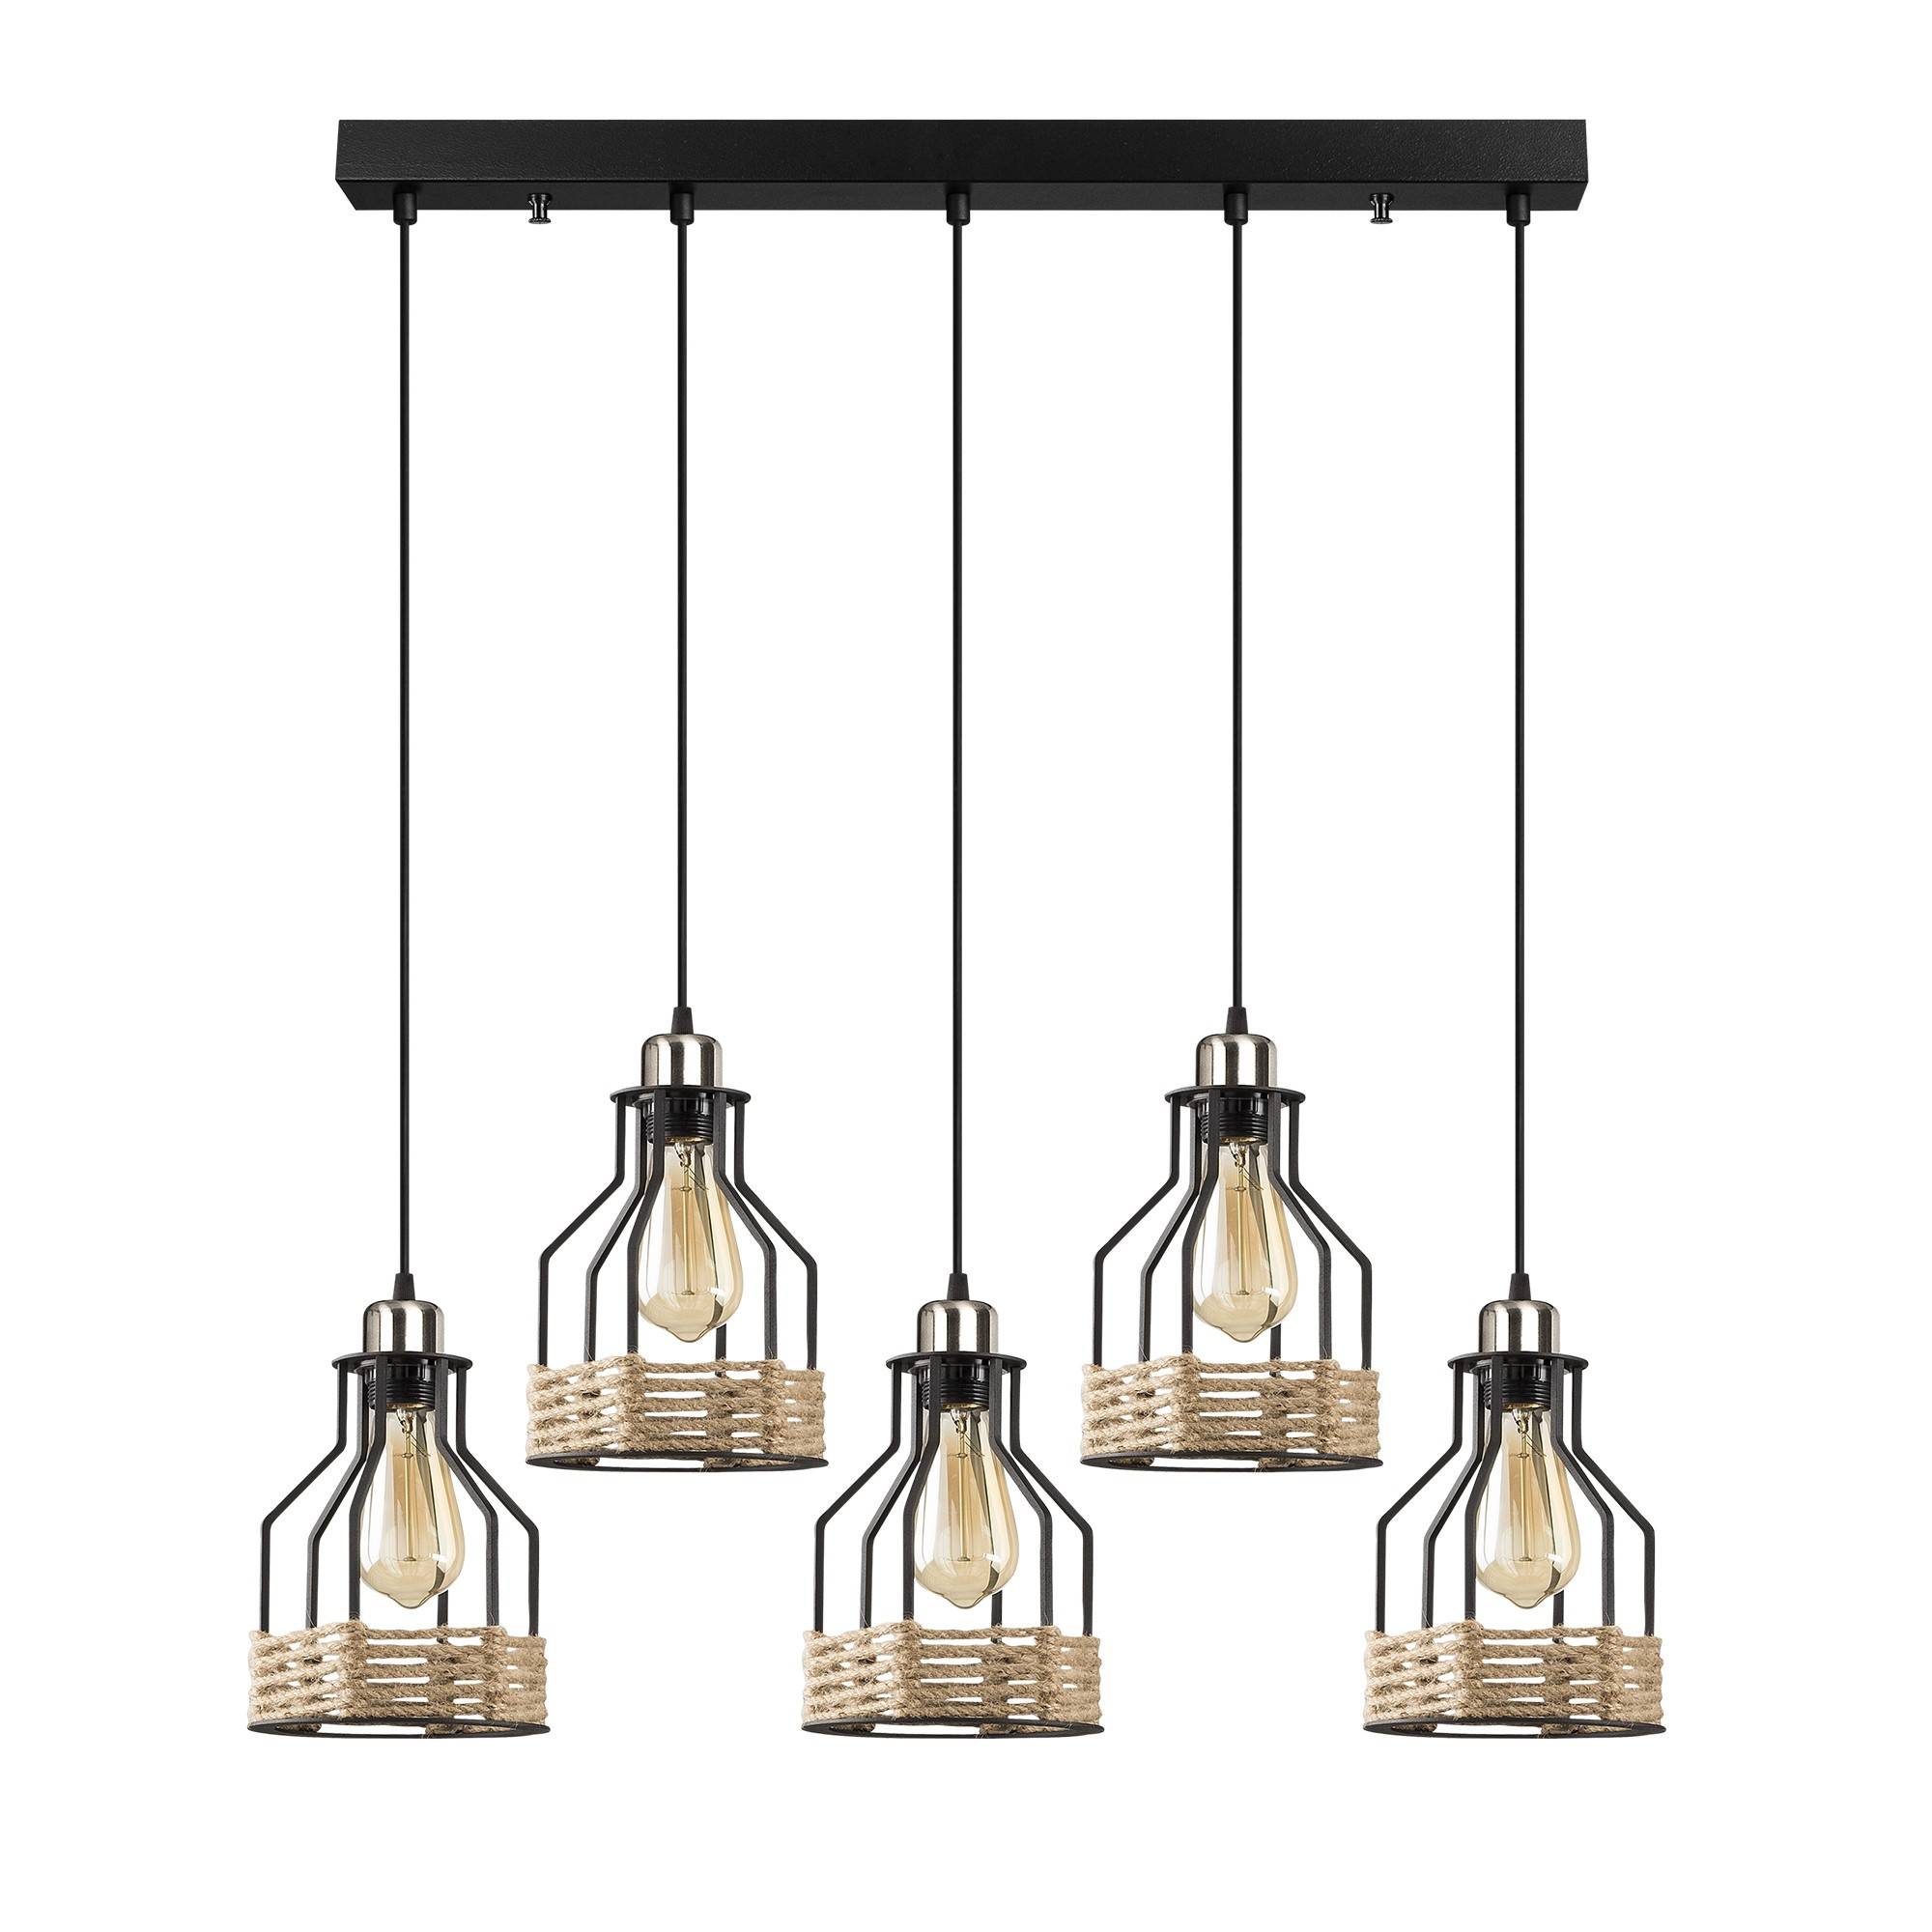 Hanglamp industriële stijl 5 lampen op een rij, verschillende hoogtes Camarose 87cm Metaal Zwart en chroom